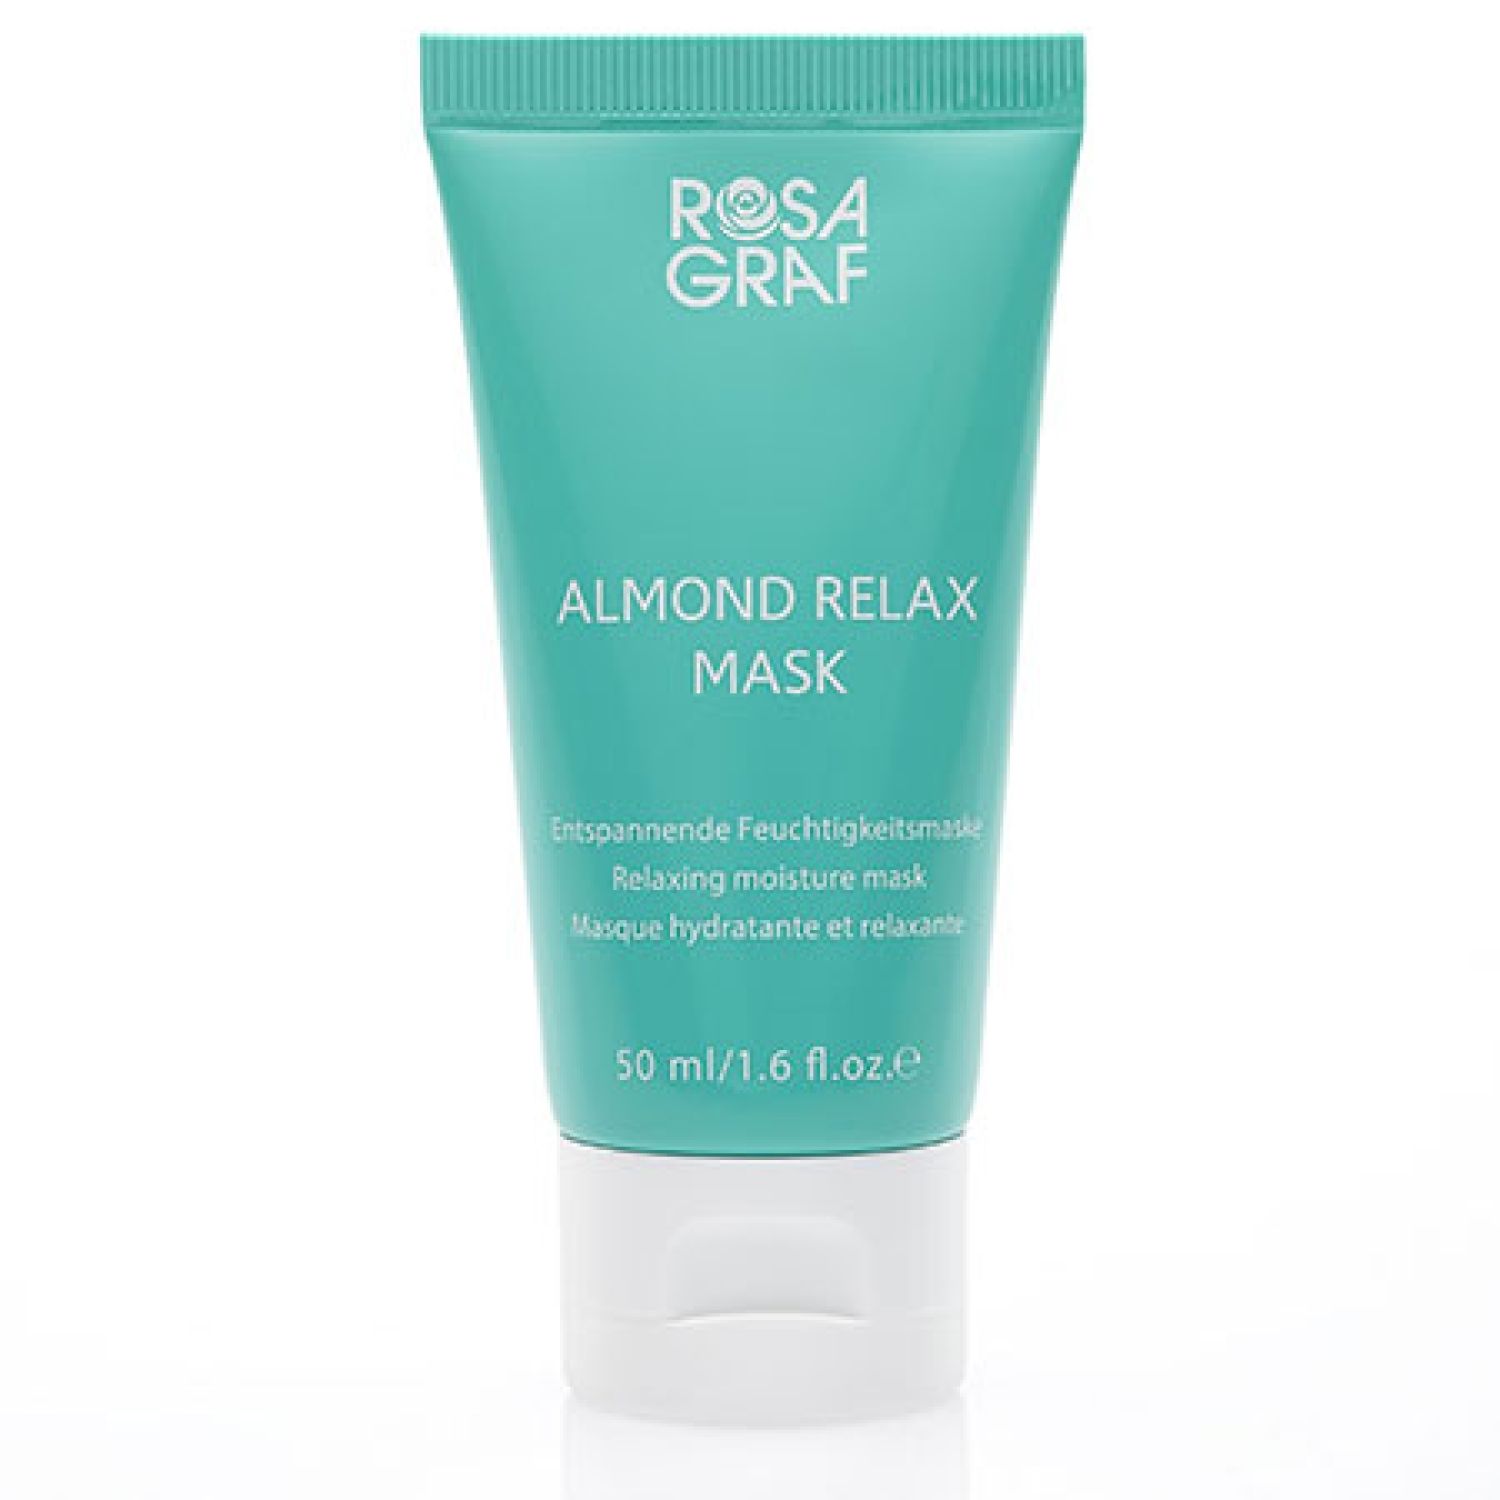 Rosa Graf Masken & Packungen Almond Relax Mask